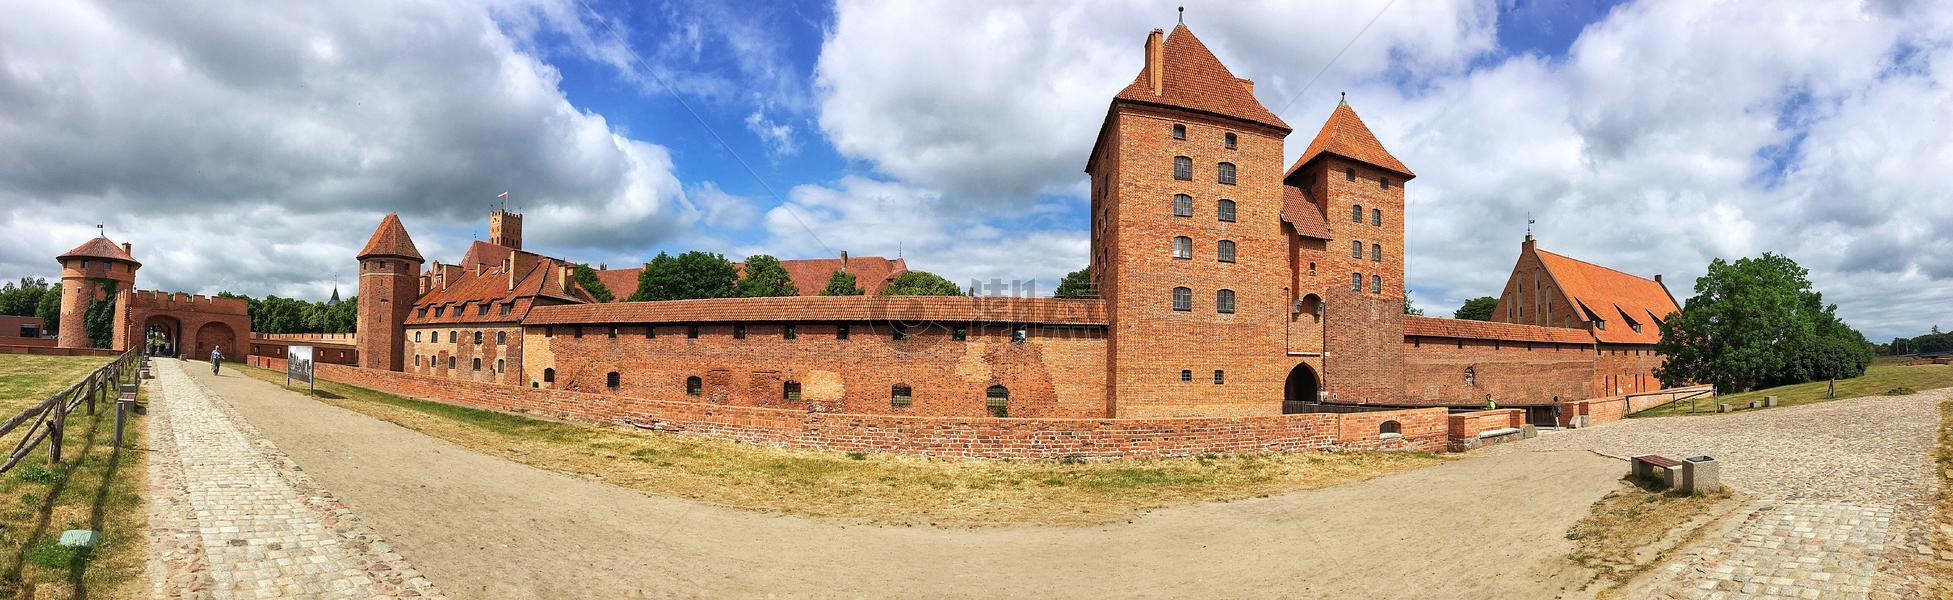 欧洲波兰著名城堡马尔堡全景图图片素材免费下载